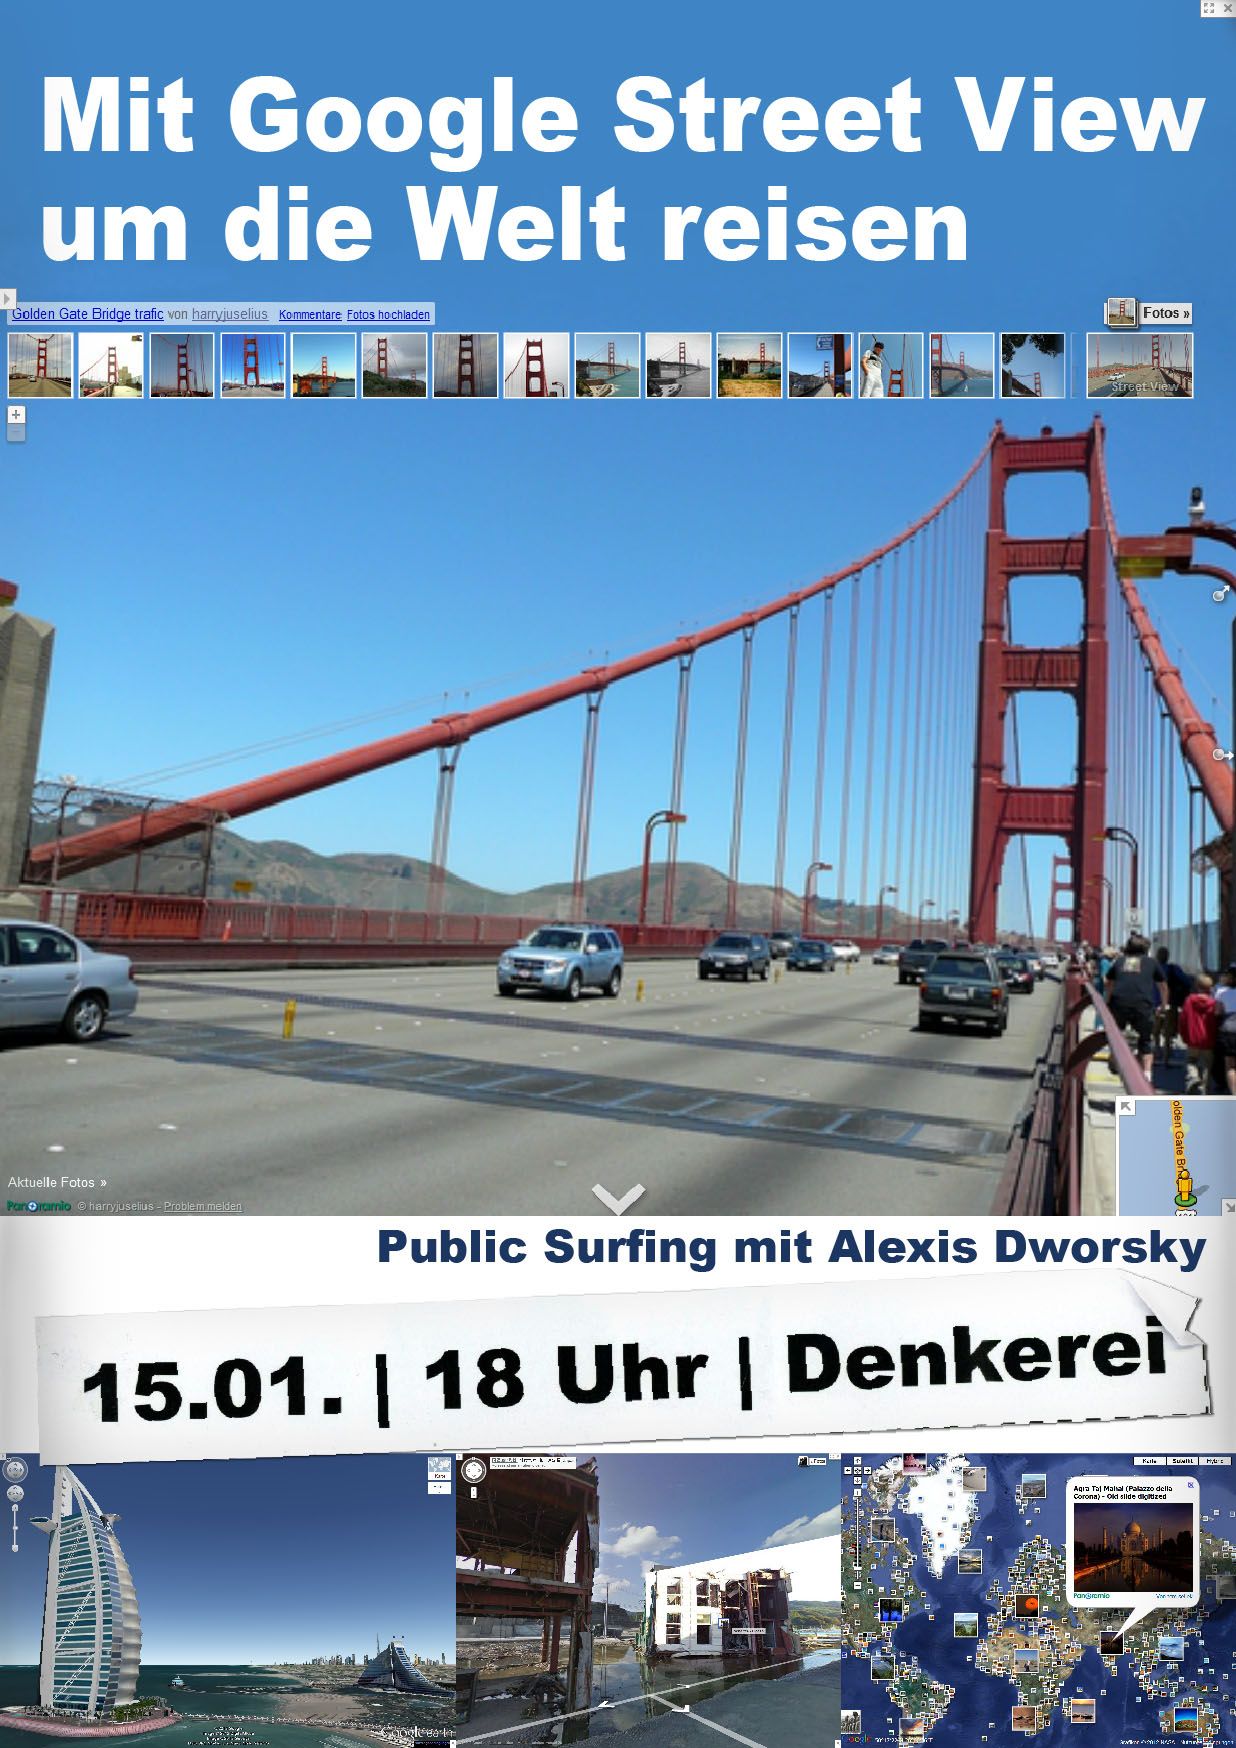 Alexis Dworsky: Mit Google Street View um die Welt reisen, Bild: Gestaltung: Alexis Dworsky.